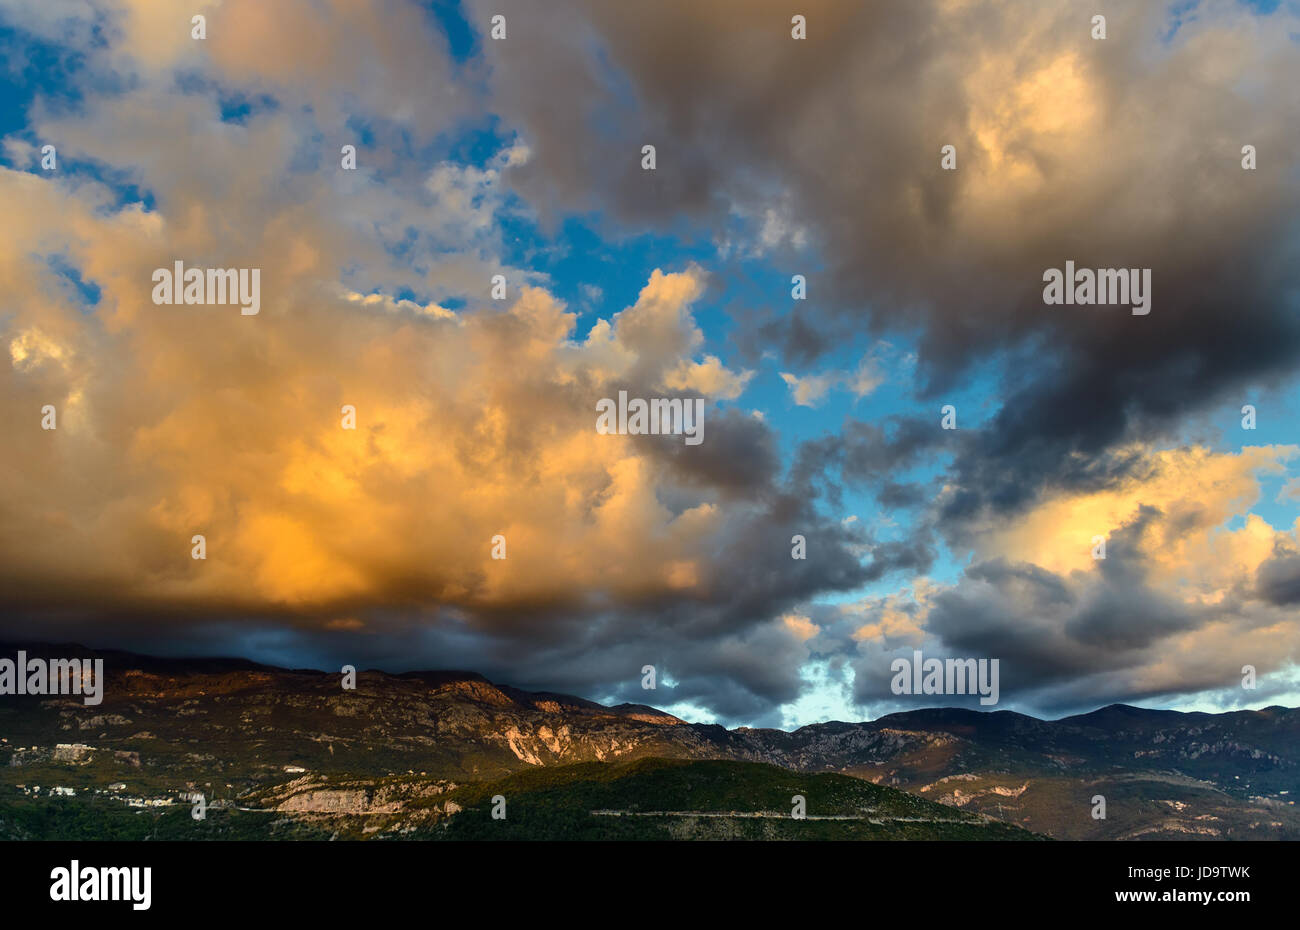 Panorama-Landschaft Himmel und Felsen in der Nähe von Budva Riviera. Fantastische Aussicht auf den bewölkten Himmel. Dramatischen Sonnenuntergang Szene. Balkan, Adria, Europa. Stockfoto